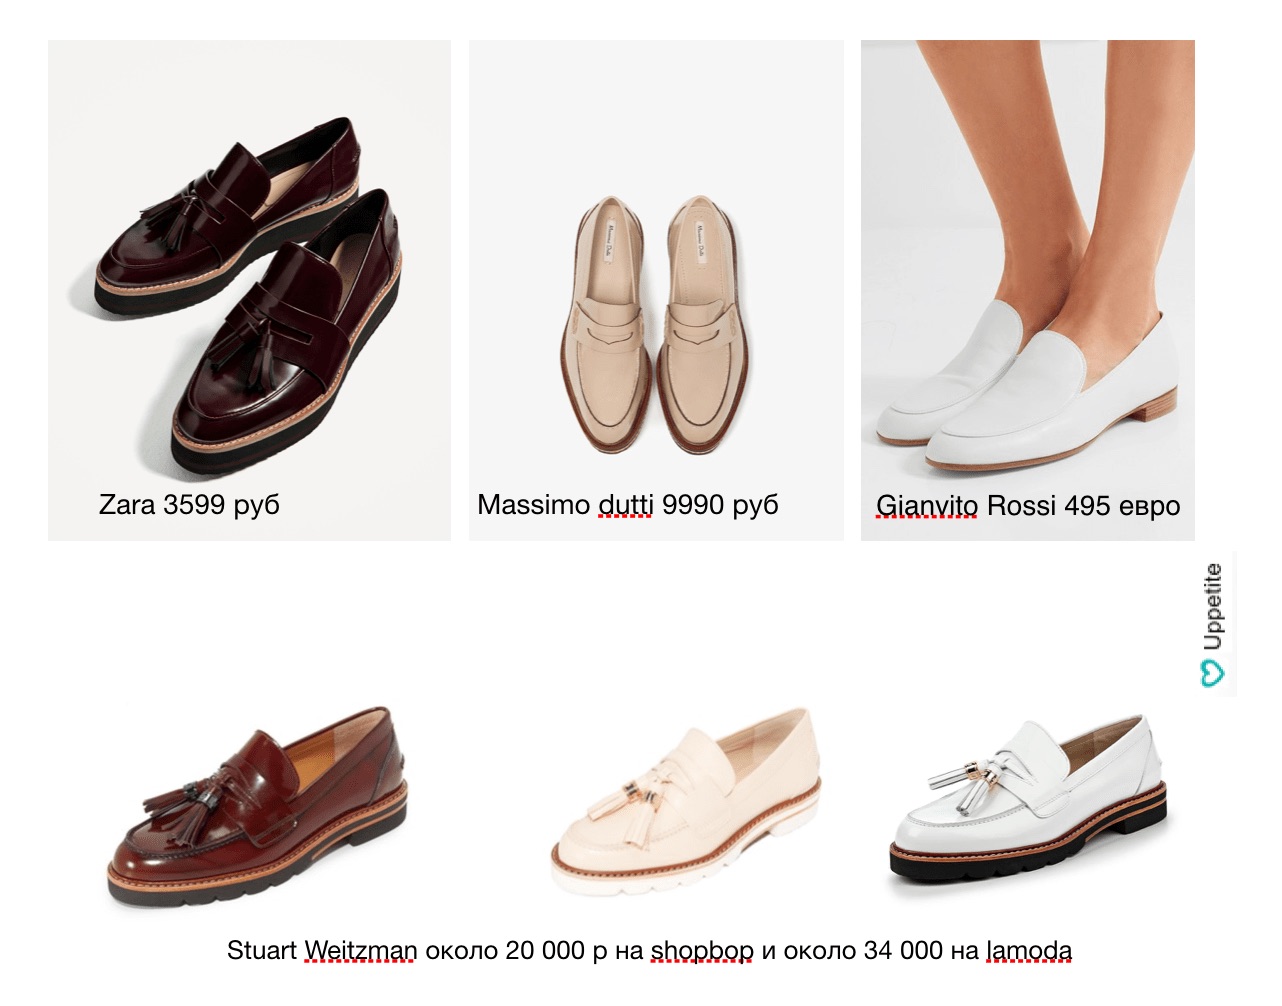 کفش برای زنان کوچک: بسته به فصل چه چیزی را انتخاب کنید و از کجا بخرید